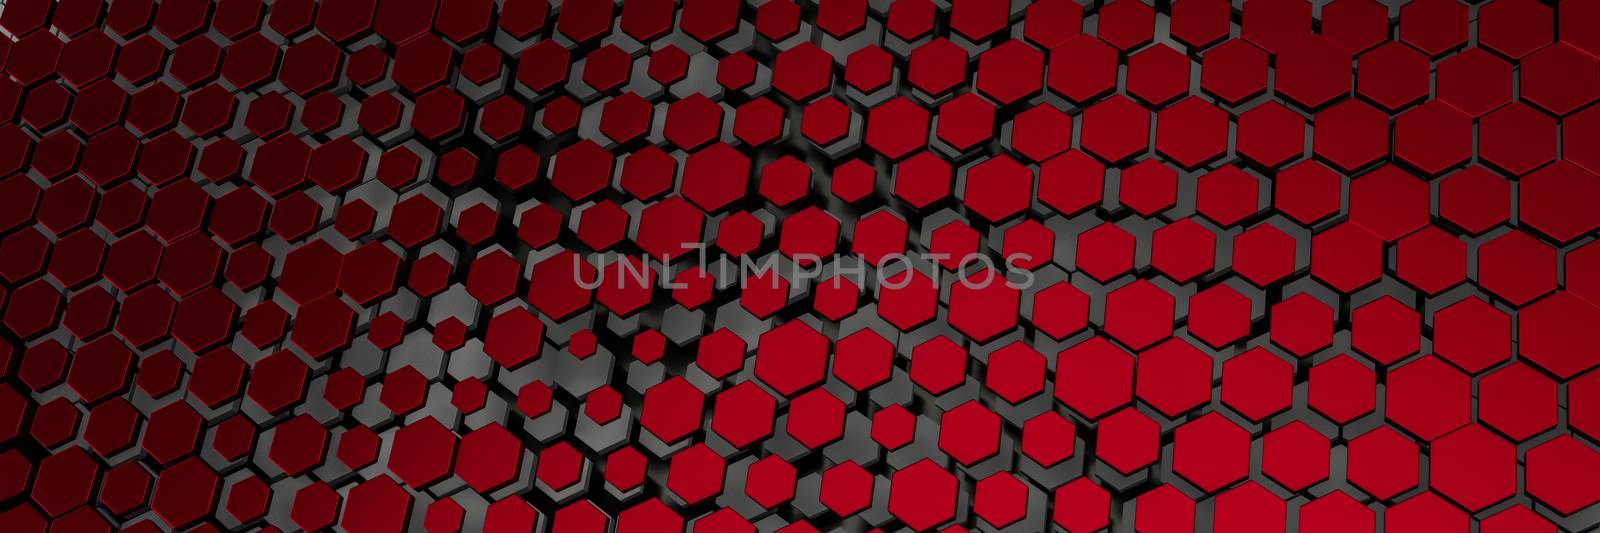 dark red hexagon background by magann